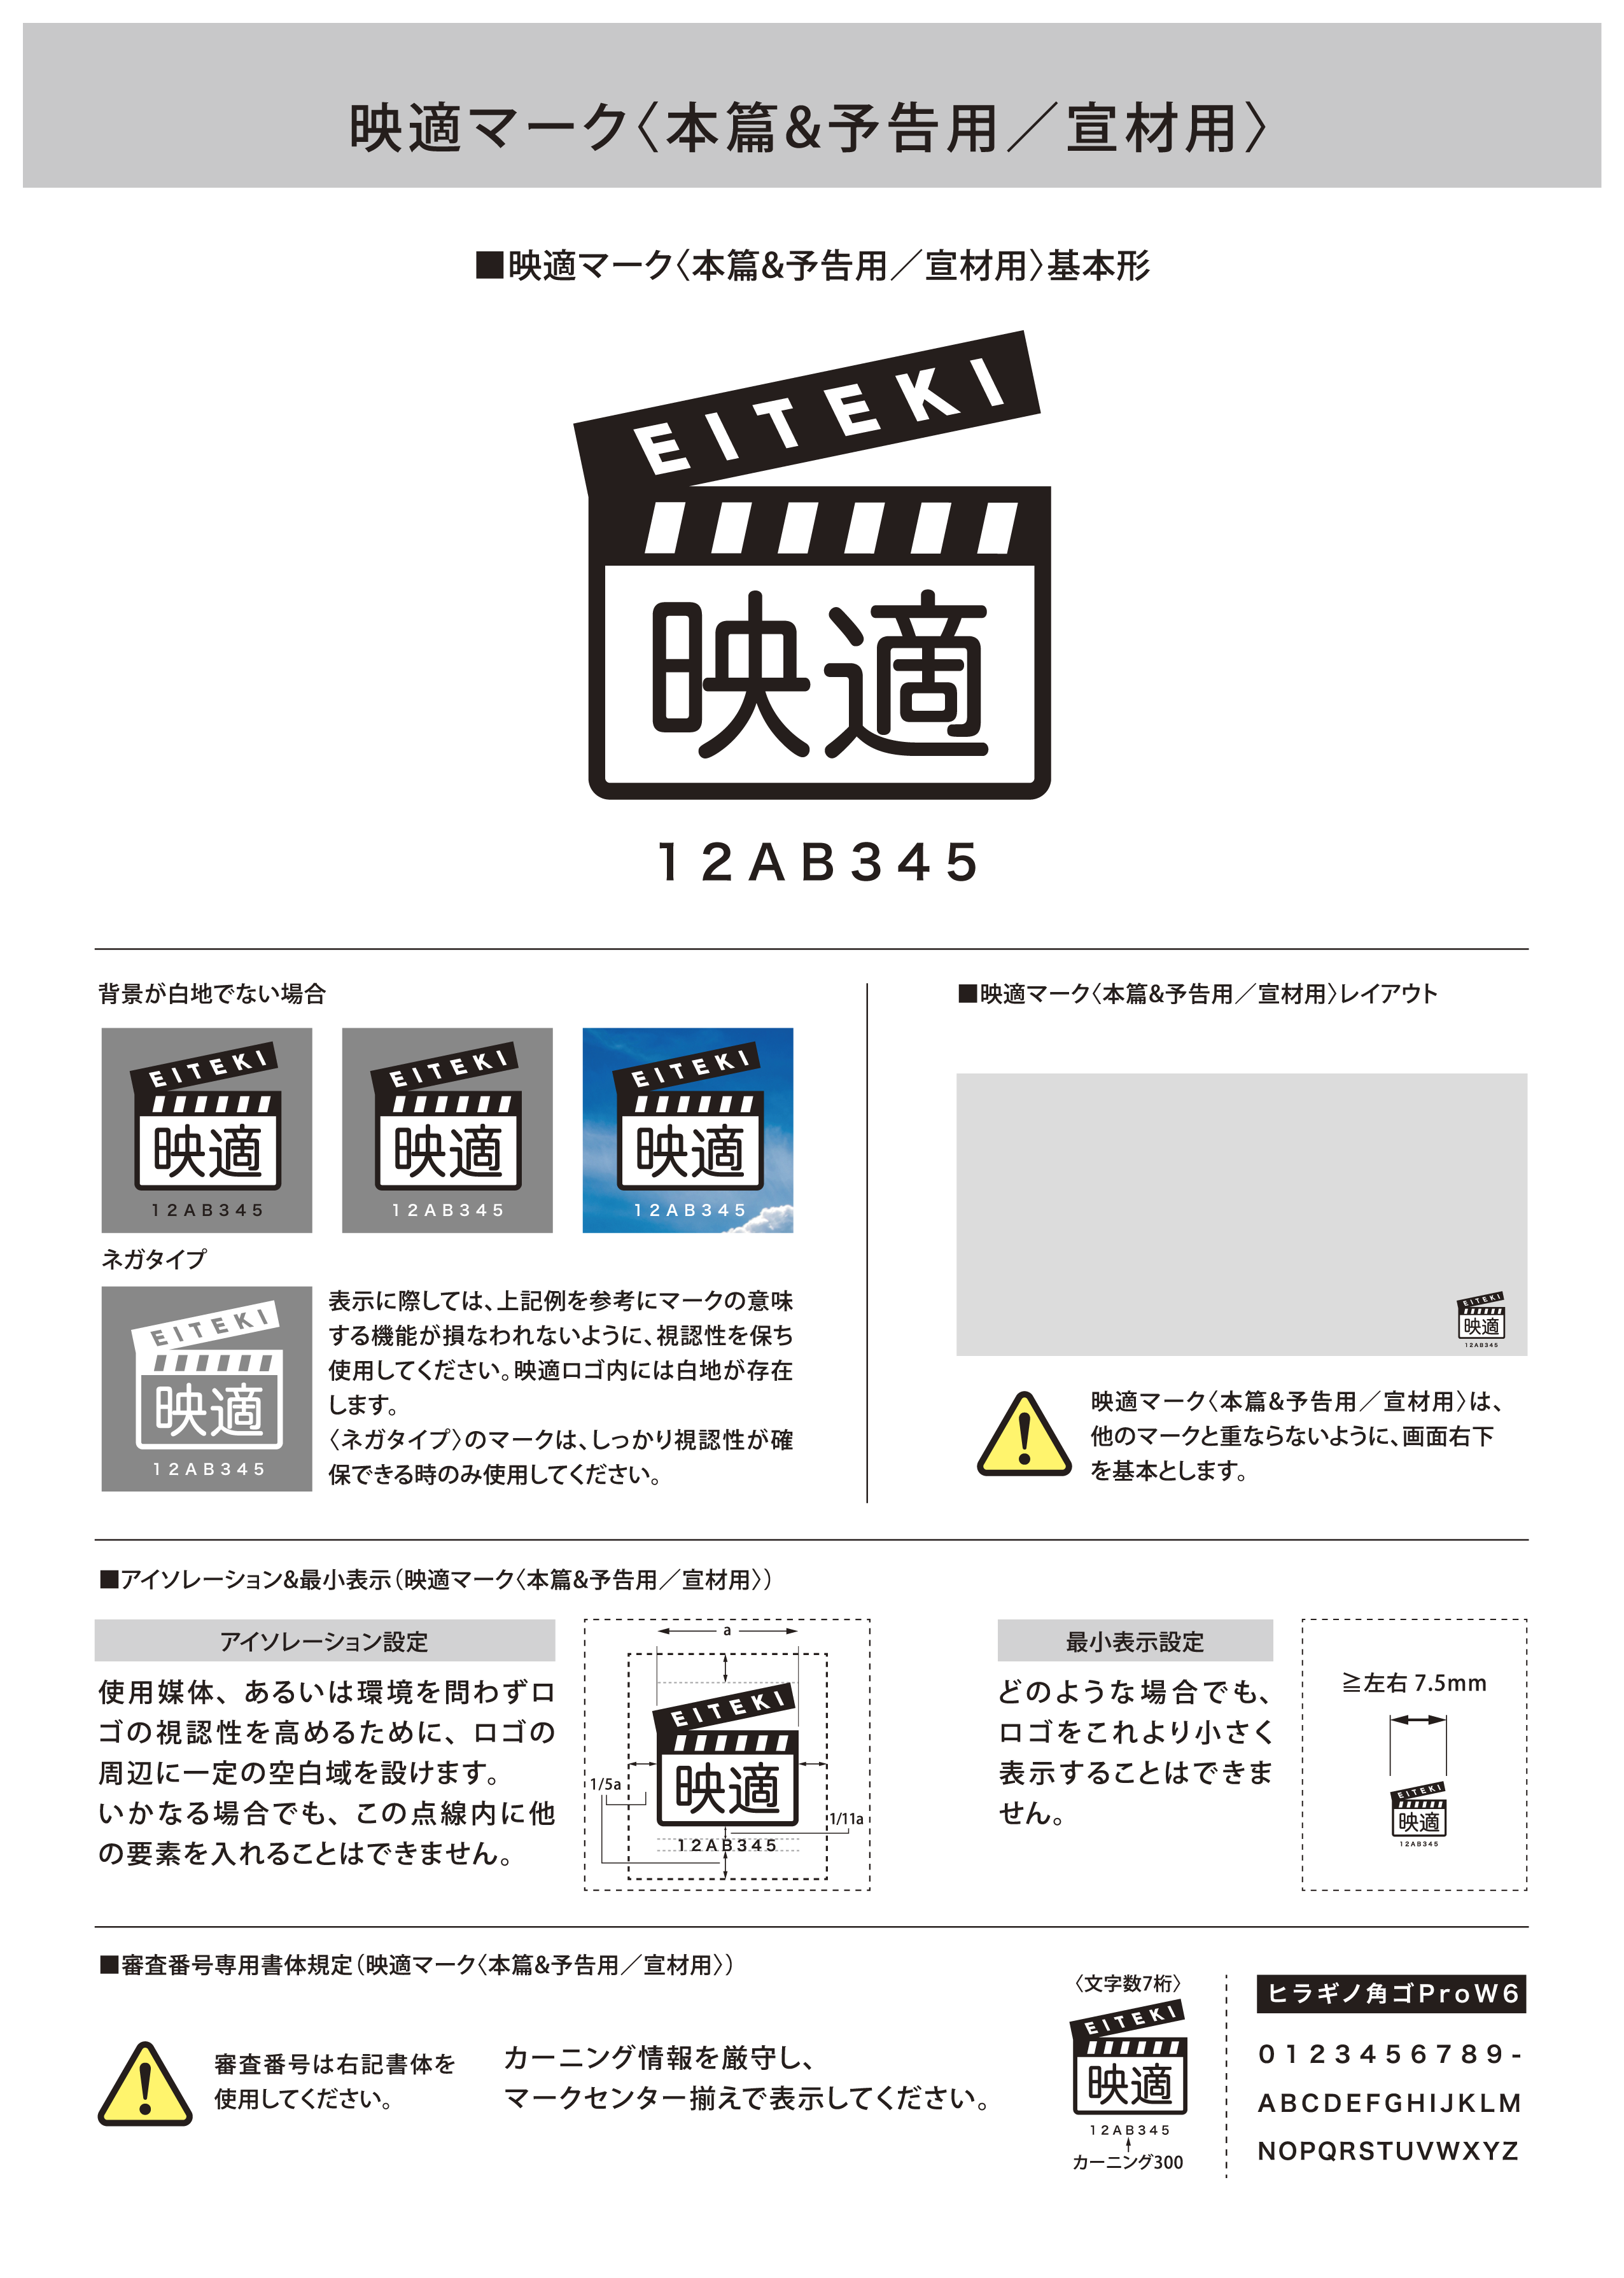 映適マークについて 日本映画制作適正化機構 5414